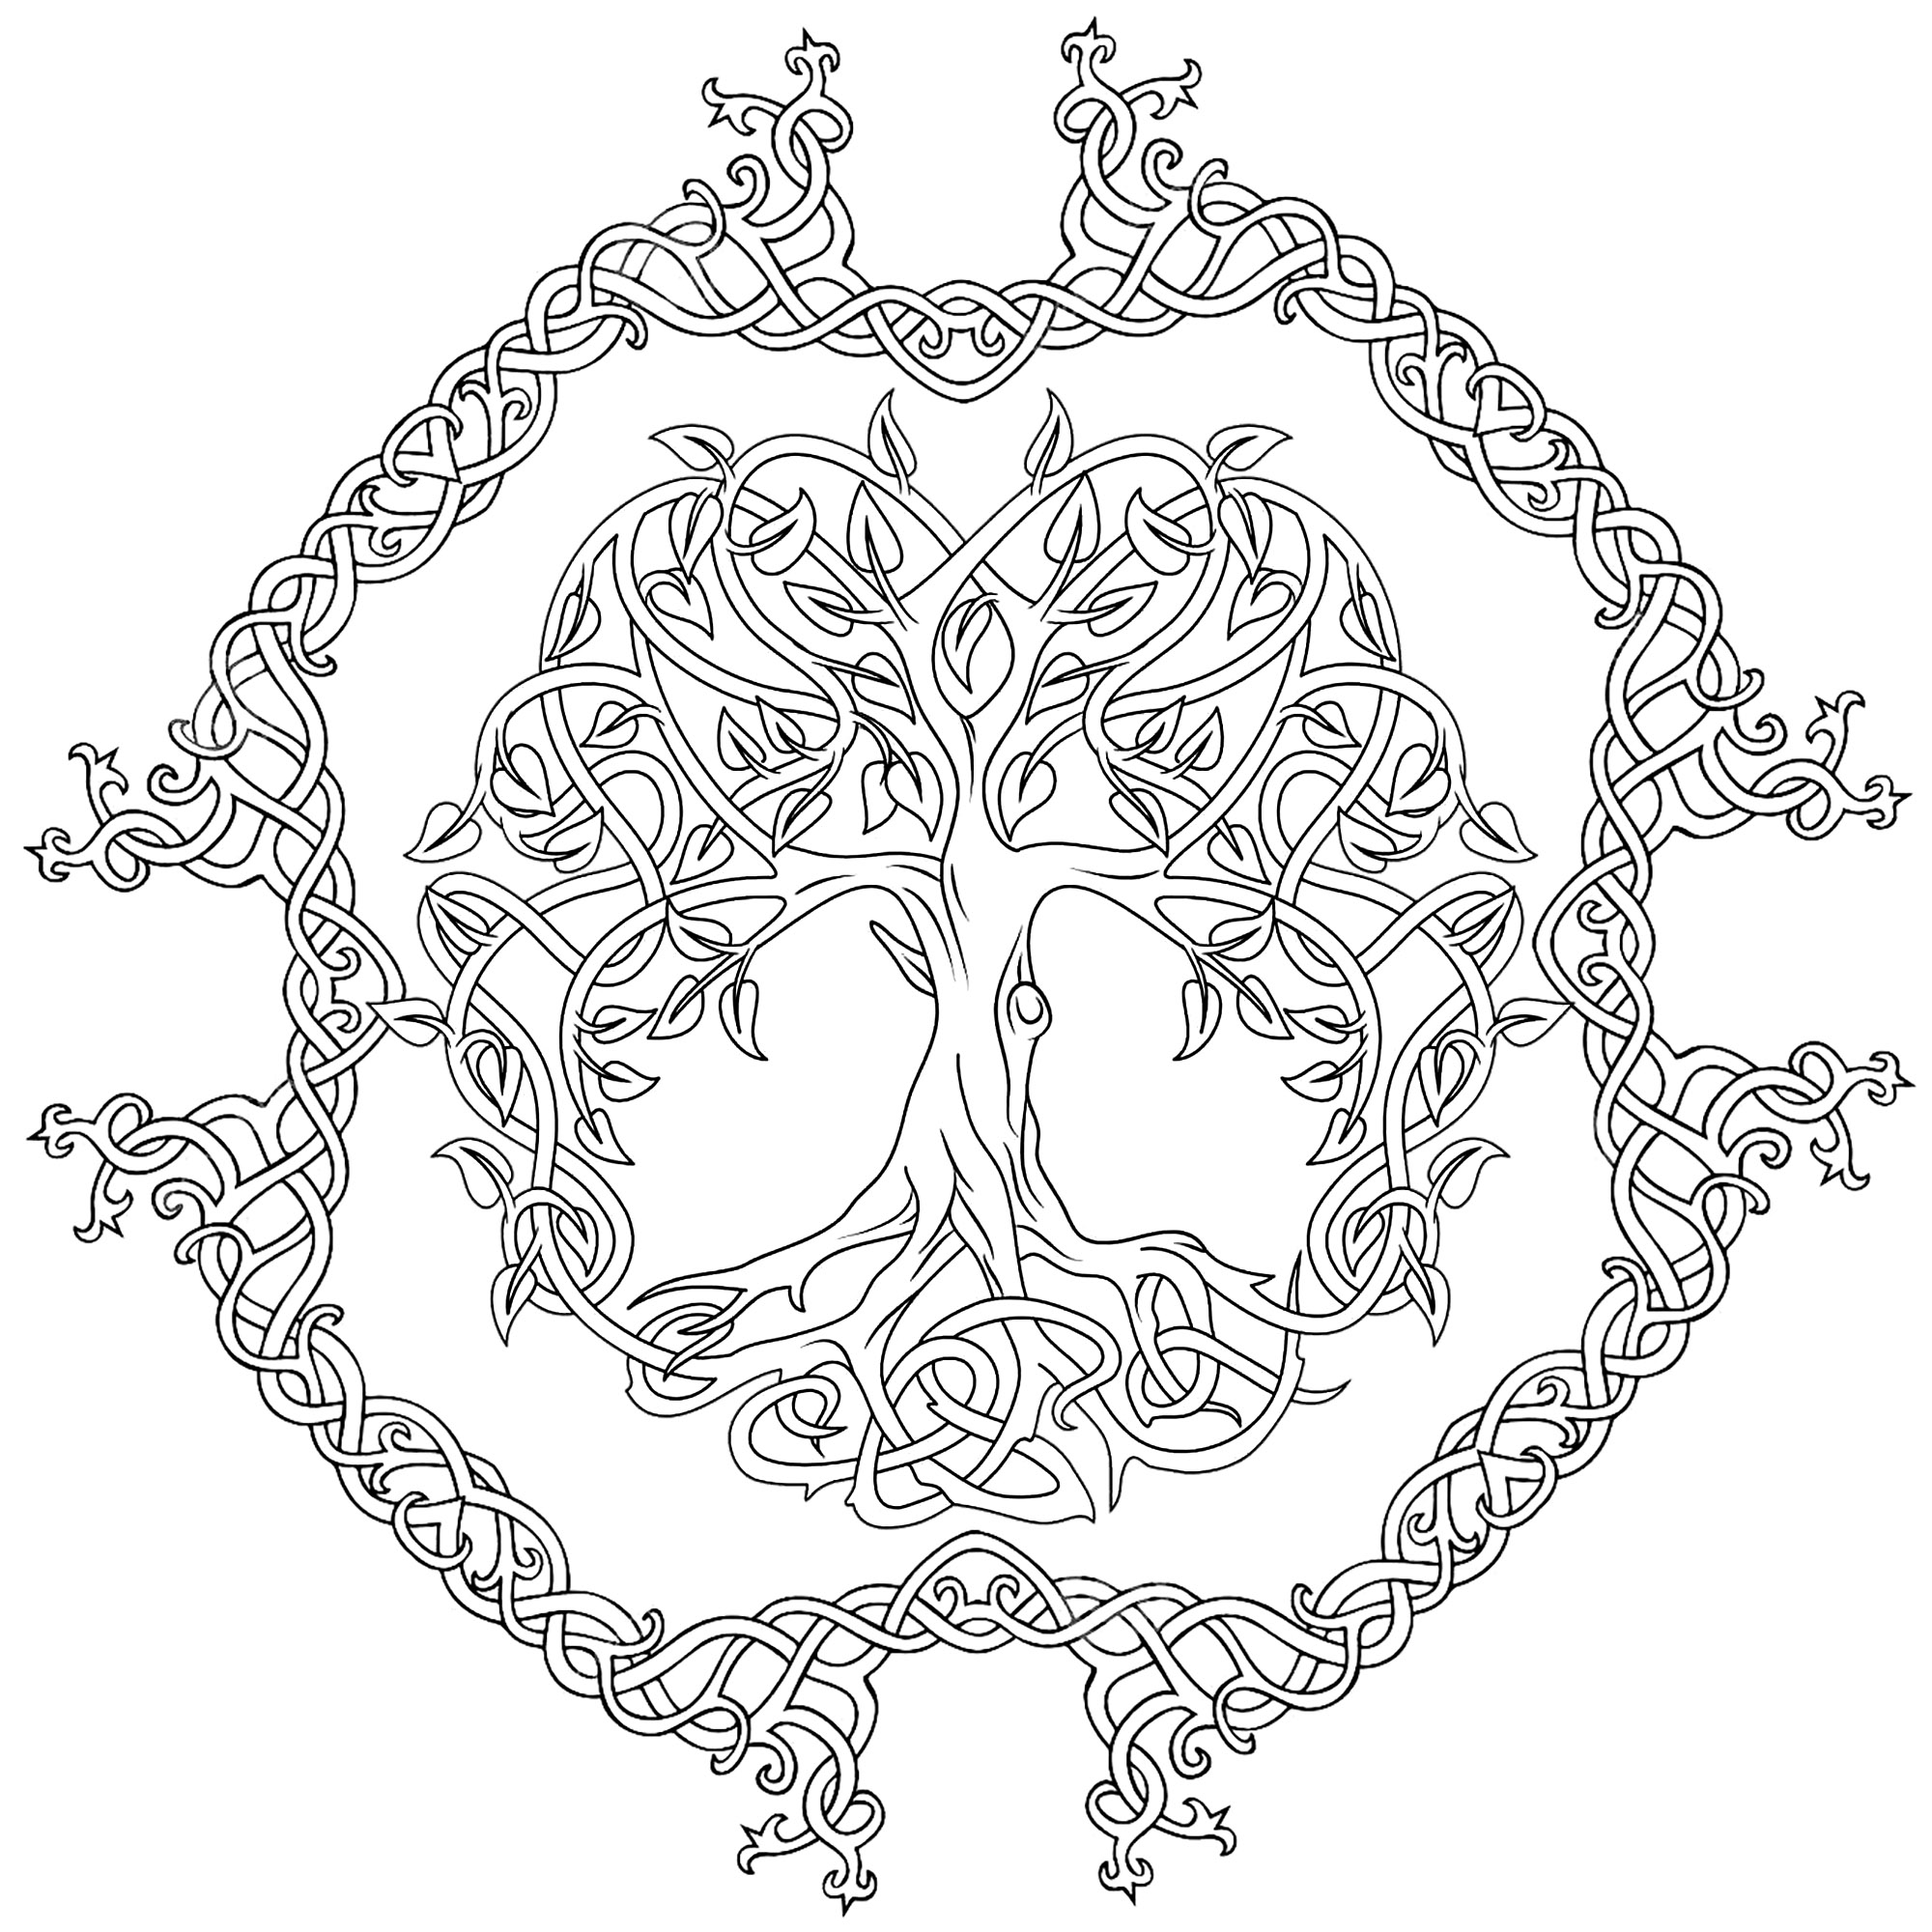 Árbol de la Vida celta, con círculo alrededor compuesto de formas curvas. El árbol de la vida celta representa el concepto de las fuerzas de la naturaleza que convergen para crear armonía.